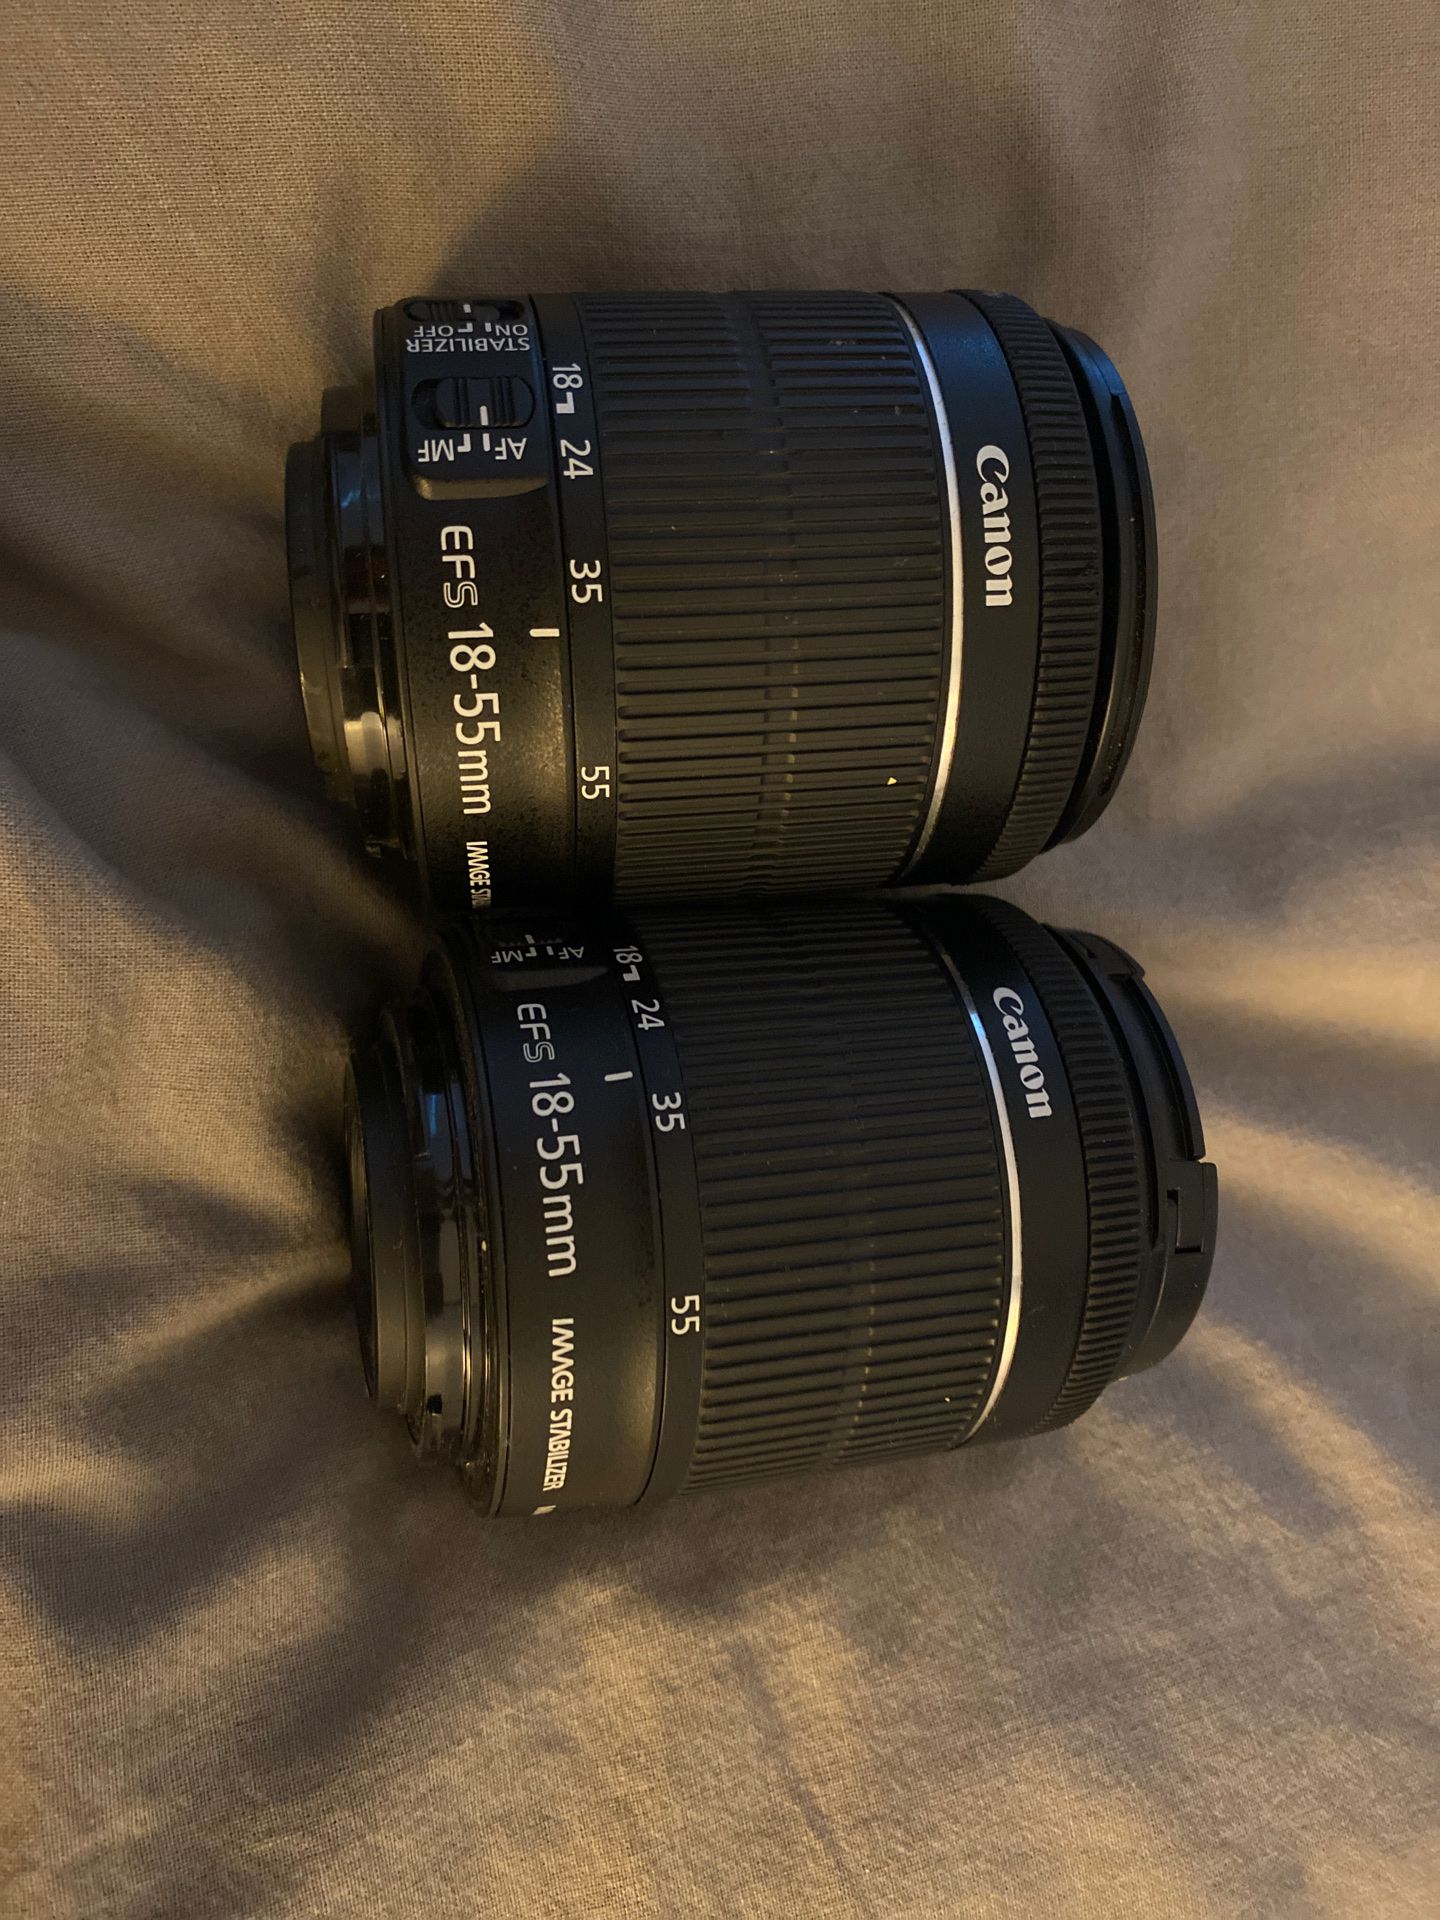 2 Canon EFS 18-55mm lenses